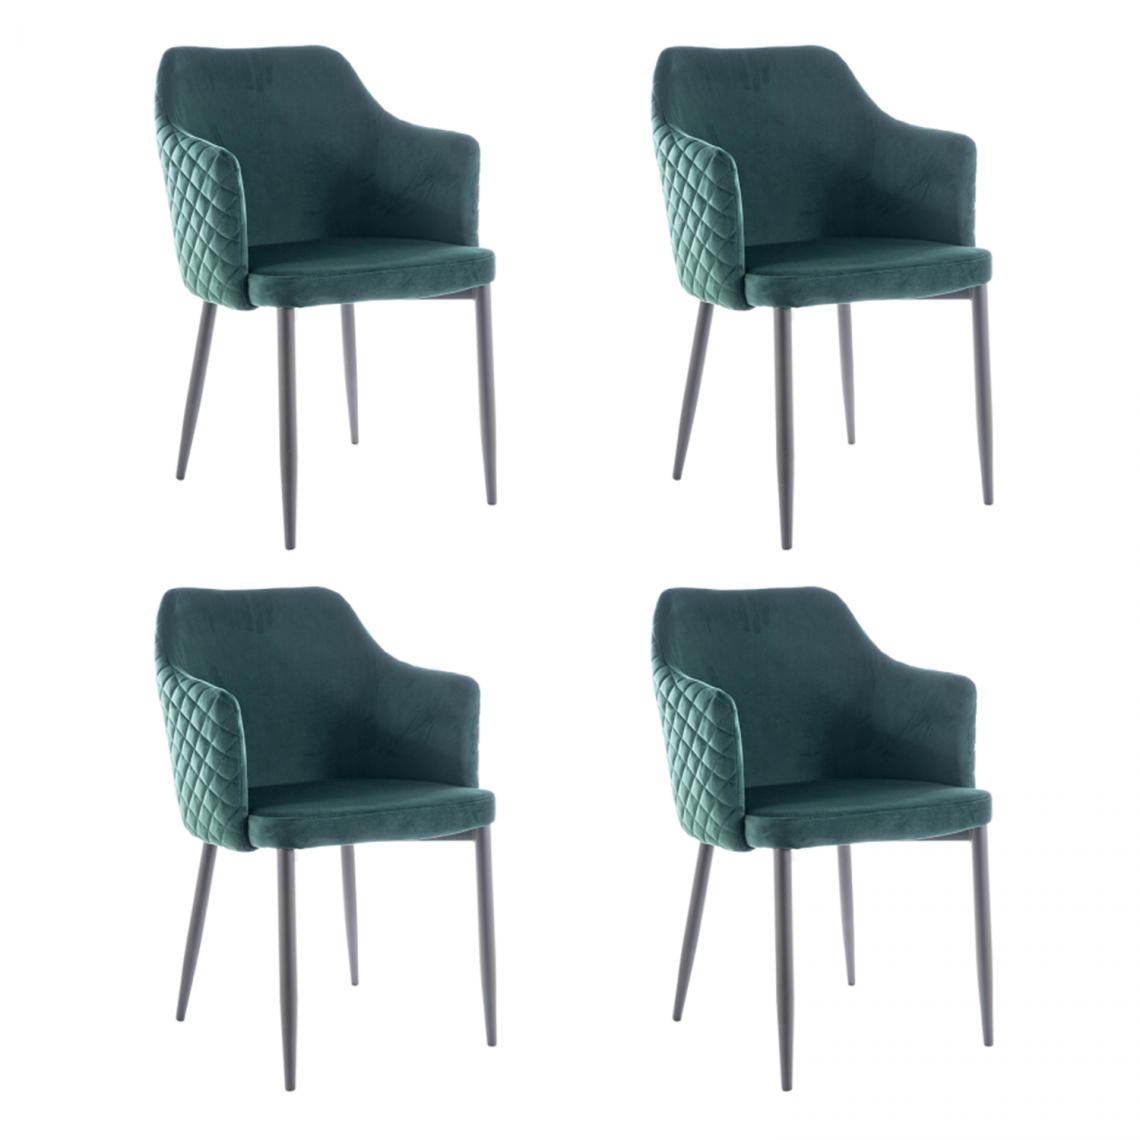 Hucoco - ASTOP - Lot de 4 chaise style glamour - 84x46x46 cm - Revêtement en tissu velouté - Chaise élégante - Vert - Chaises